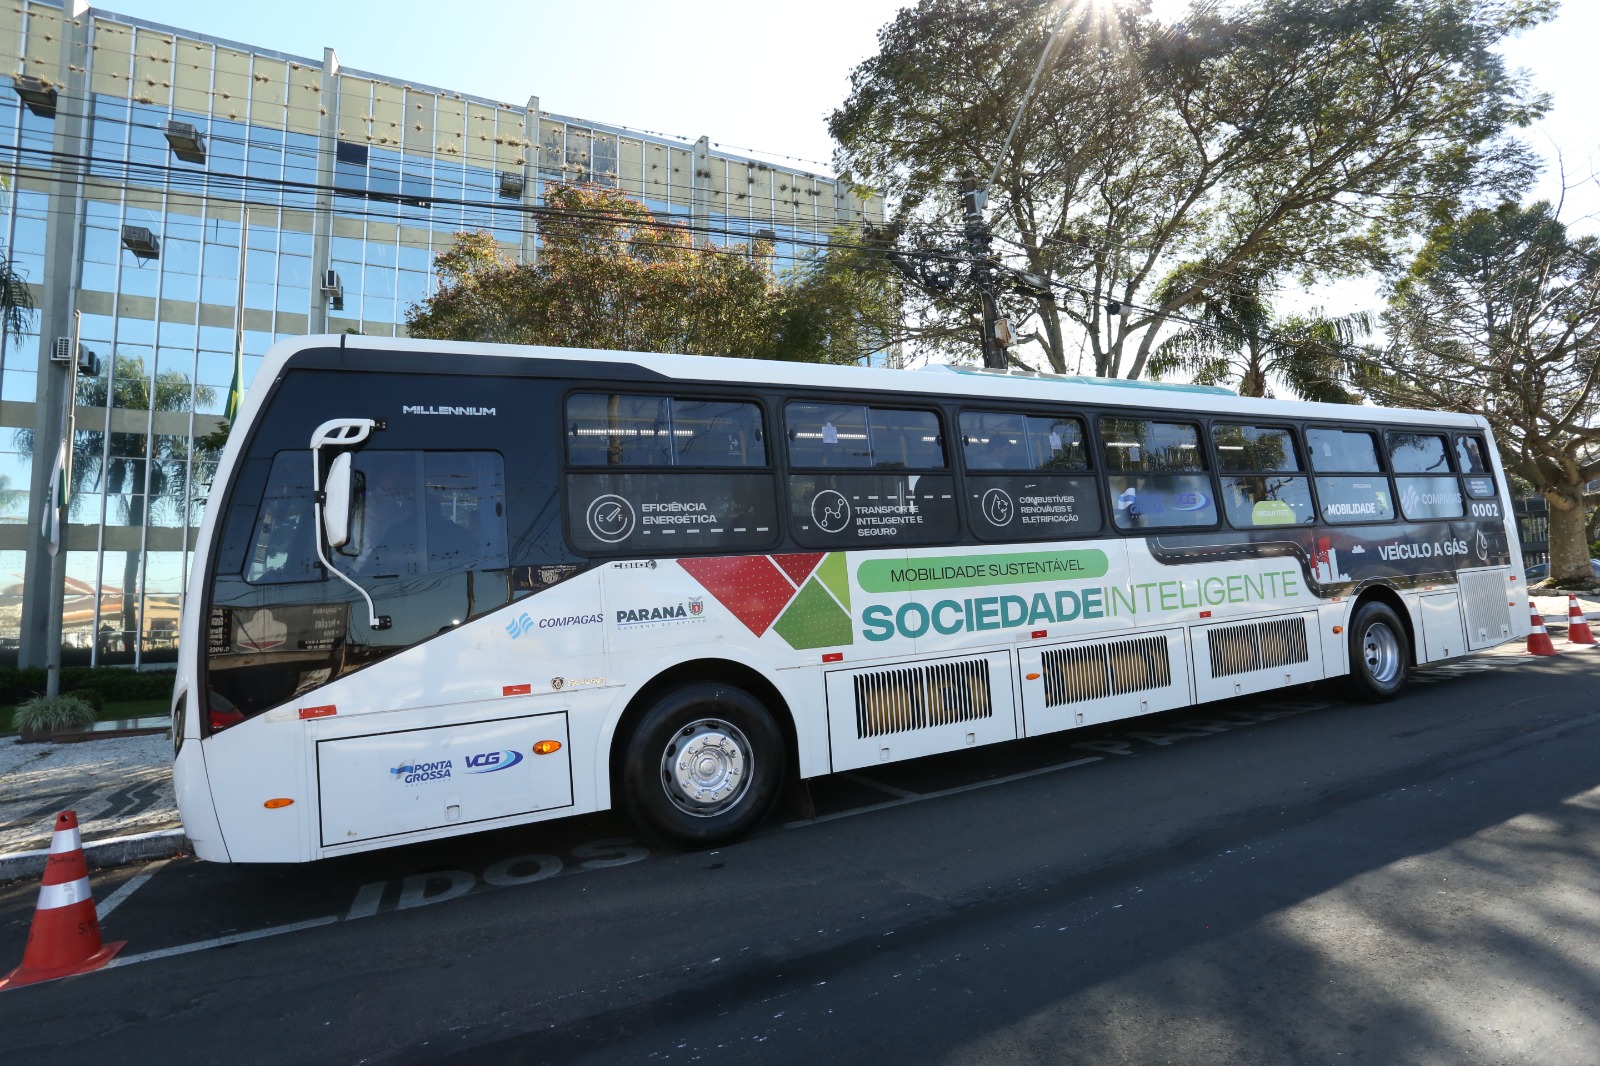 Ônibus a GNV (e biometano) para transporte urbano, modelo padron K 280 fabricado pela Scania, circula para testes em Ponta Grossa, no Paraná (Foto: Prefeitura de Ponta Grossa/PR)